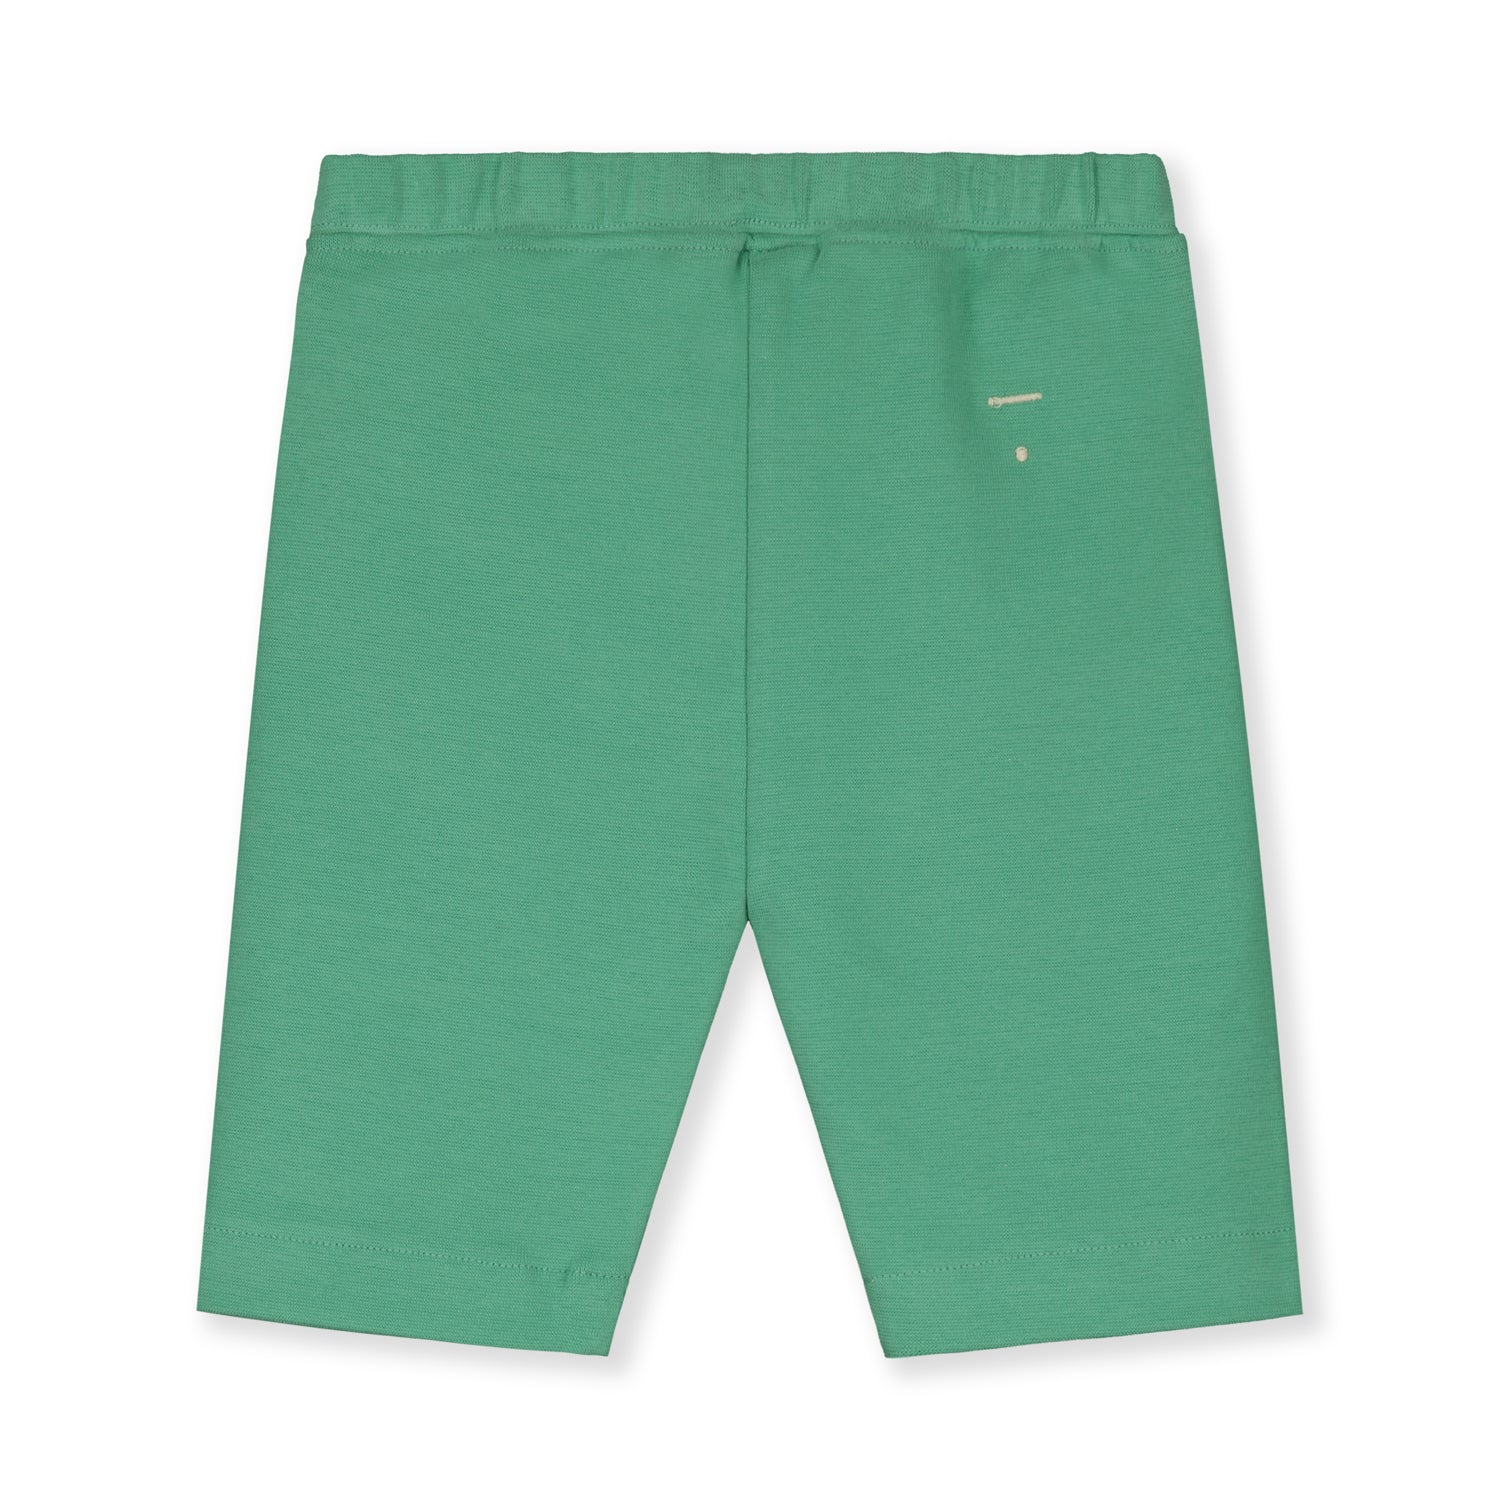 Girls Green Cotton Biker Shorts